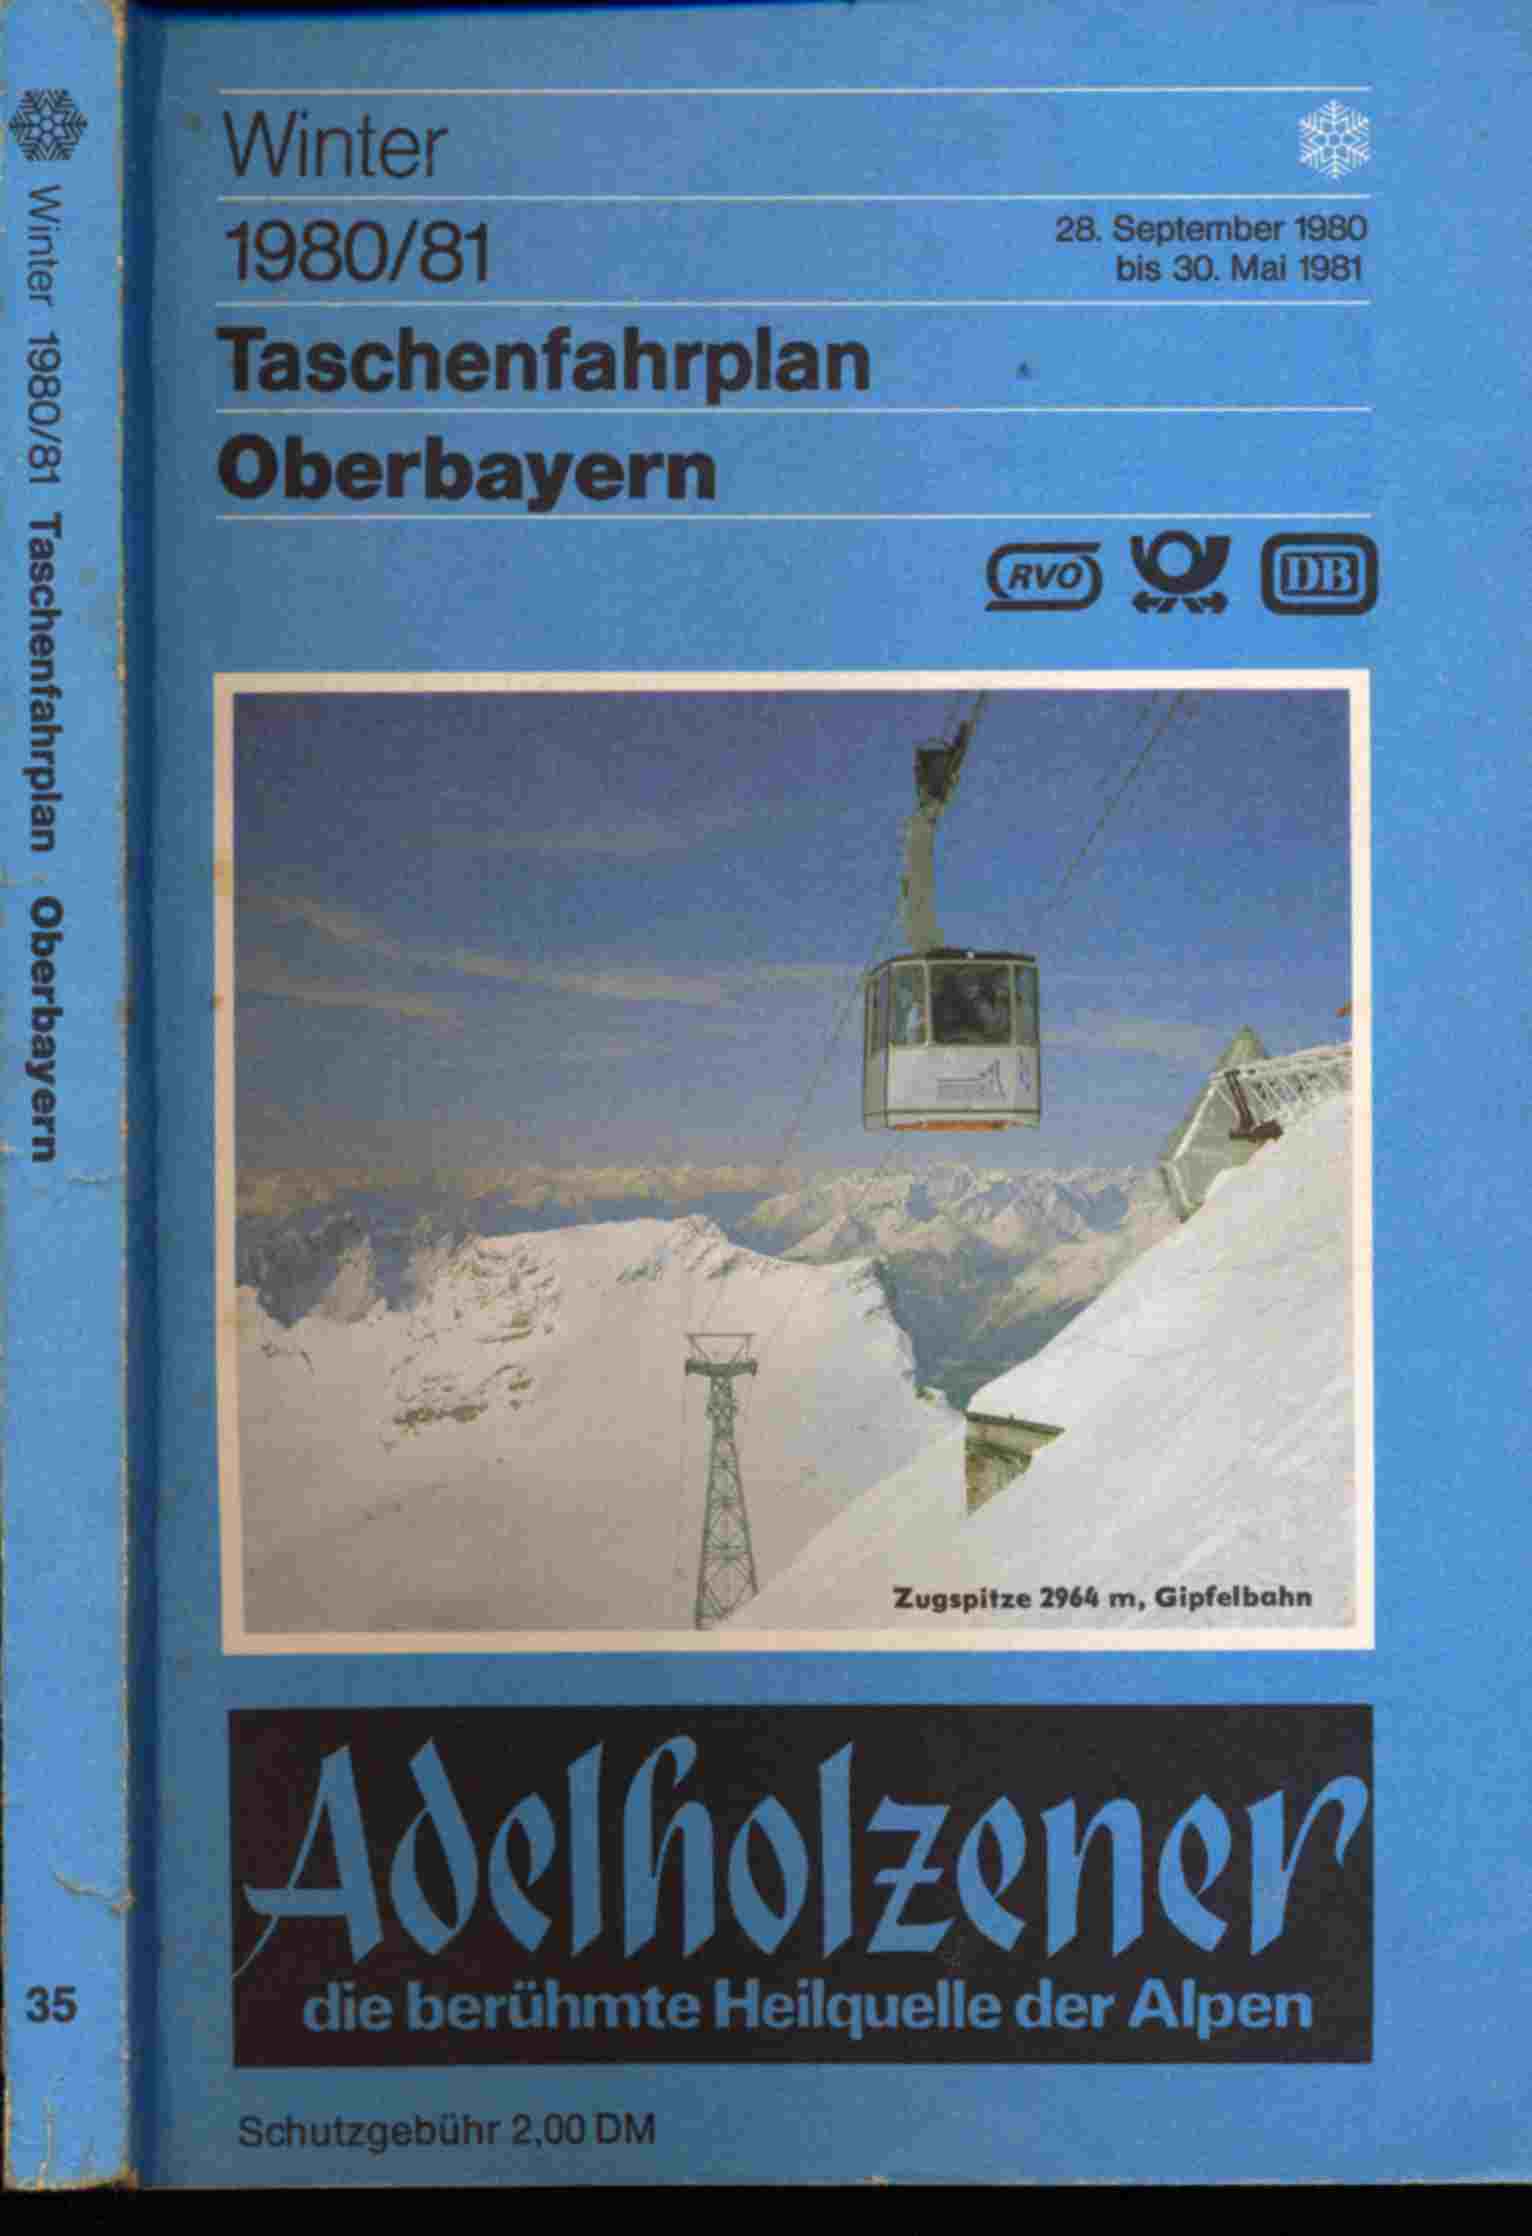 Deutsche Bundesbahn/Deutsche Bahnpost (Hrsg.)  Taschenfahrplan Oberbayern Winter 1980/81 (28. September 1980 bis 30. Mai 1981). 